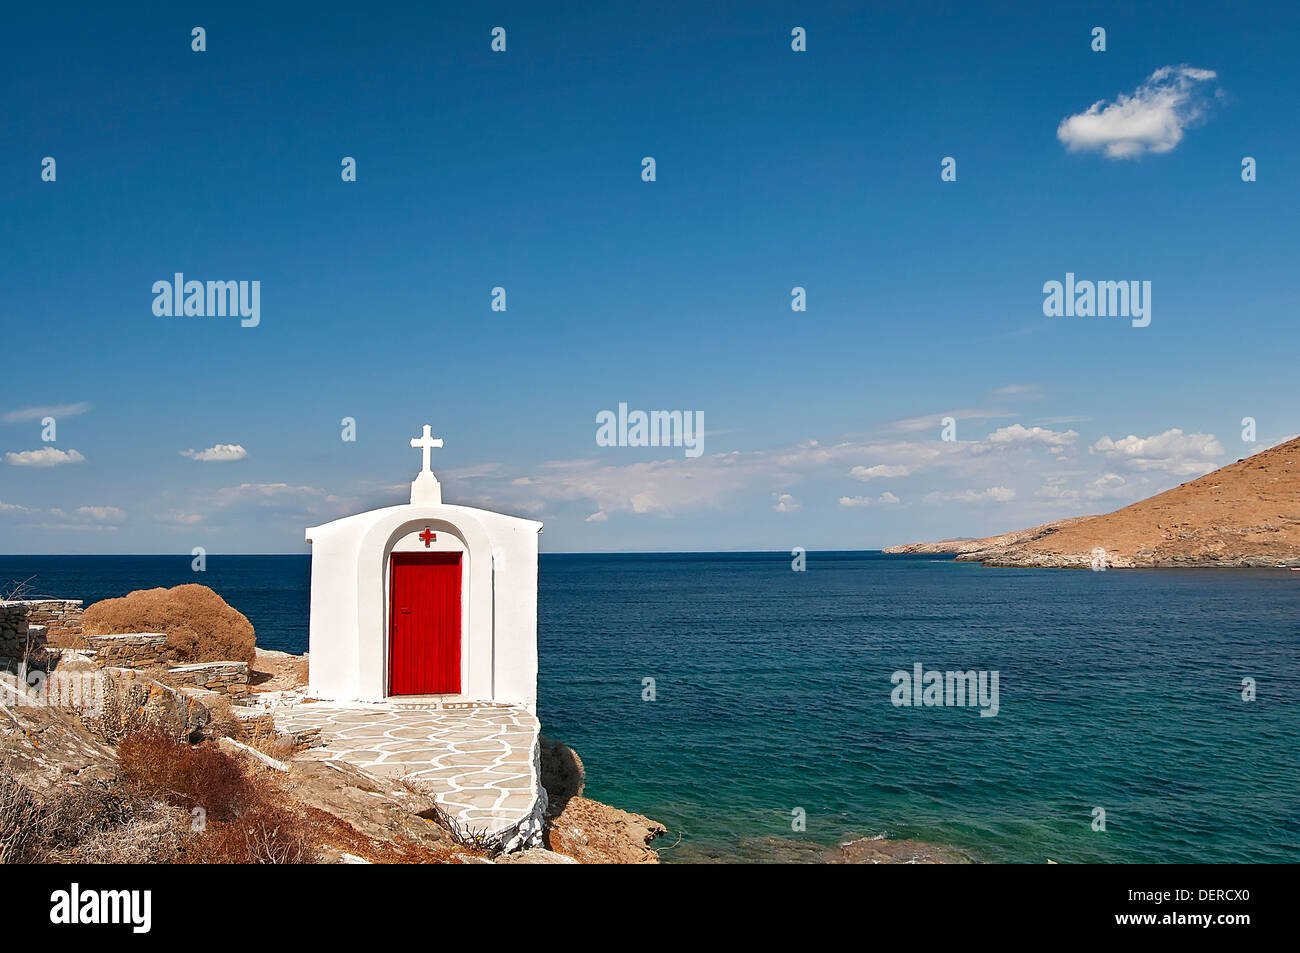 "Kythnos Insel Inseln der Kykladen, Griechenland - Kapelle der Panagia Flampouria Kirche, auf dem Hintergrund des Meeres Stockfoto